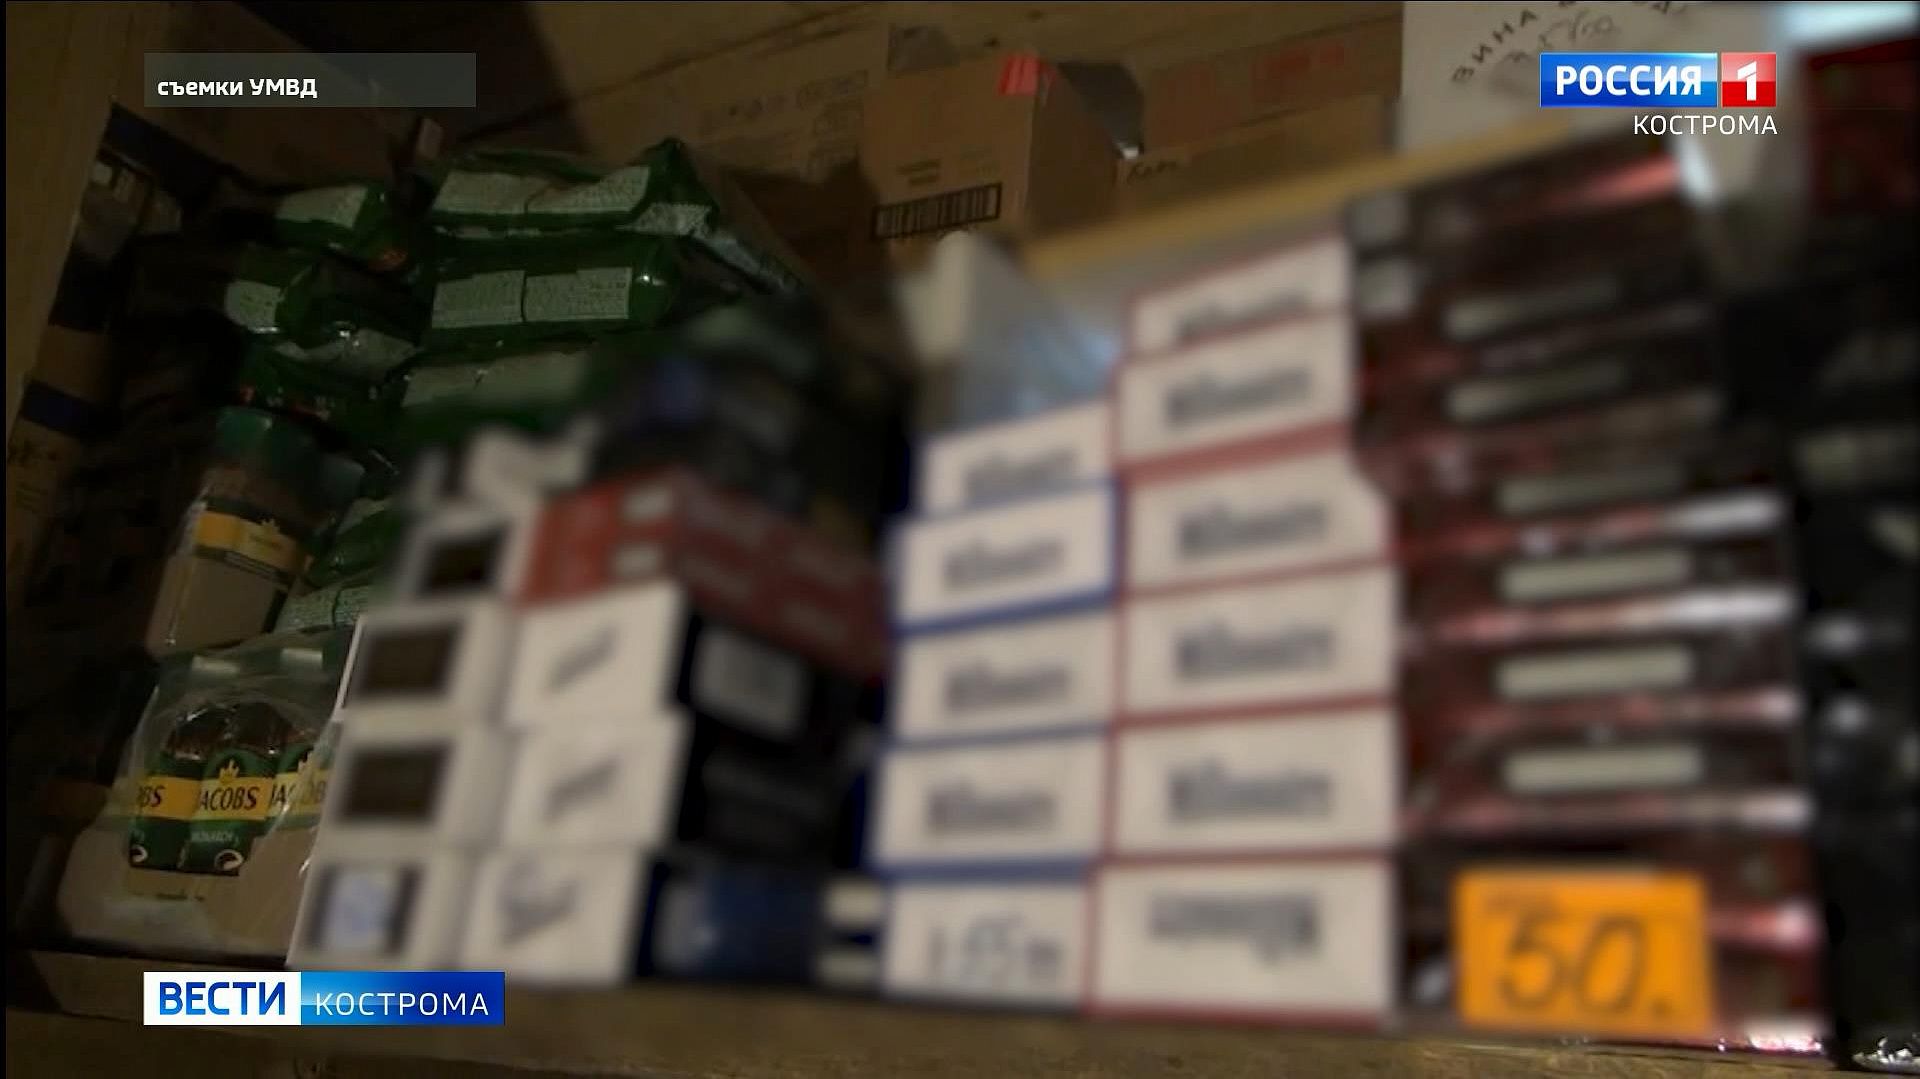 Табак «для своих»: в Костроме накрыли ларек с контрафактными сигаретами